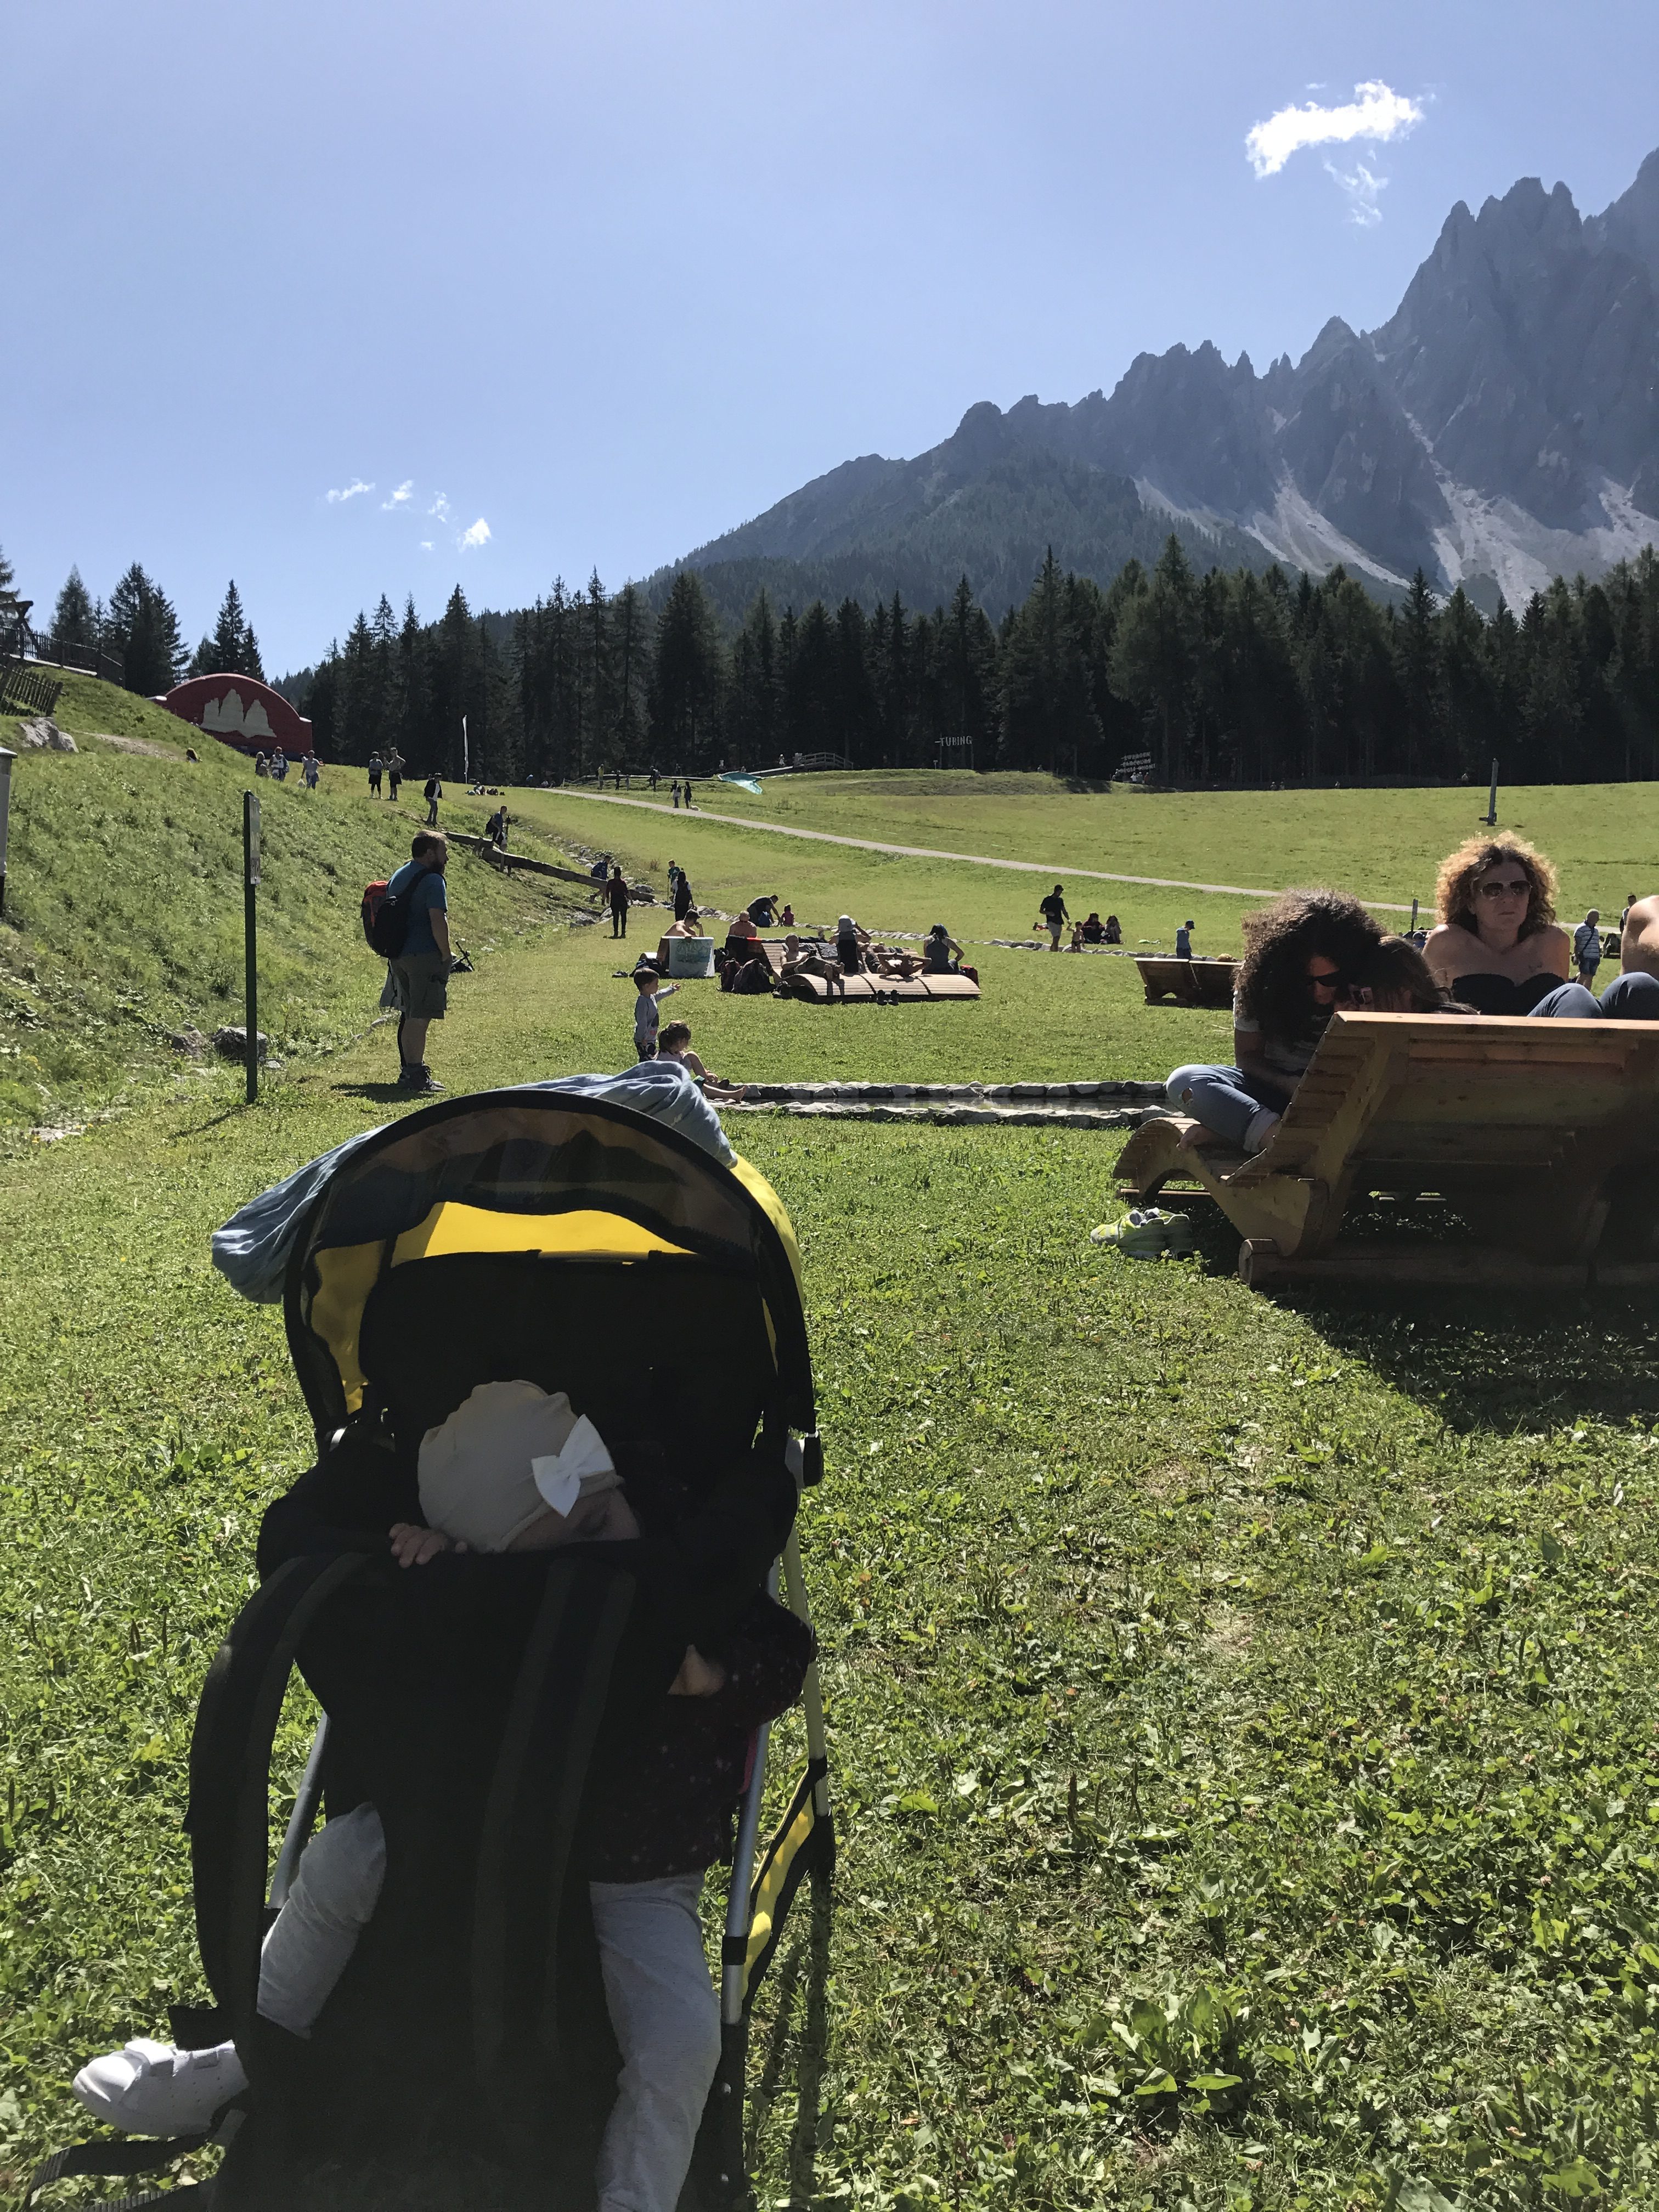 vacanze con bambini, Dolomiti